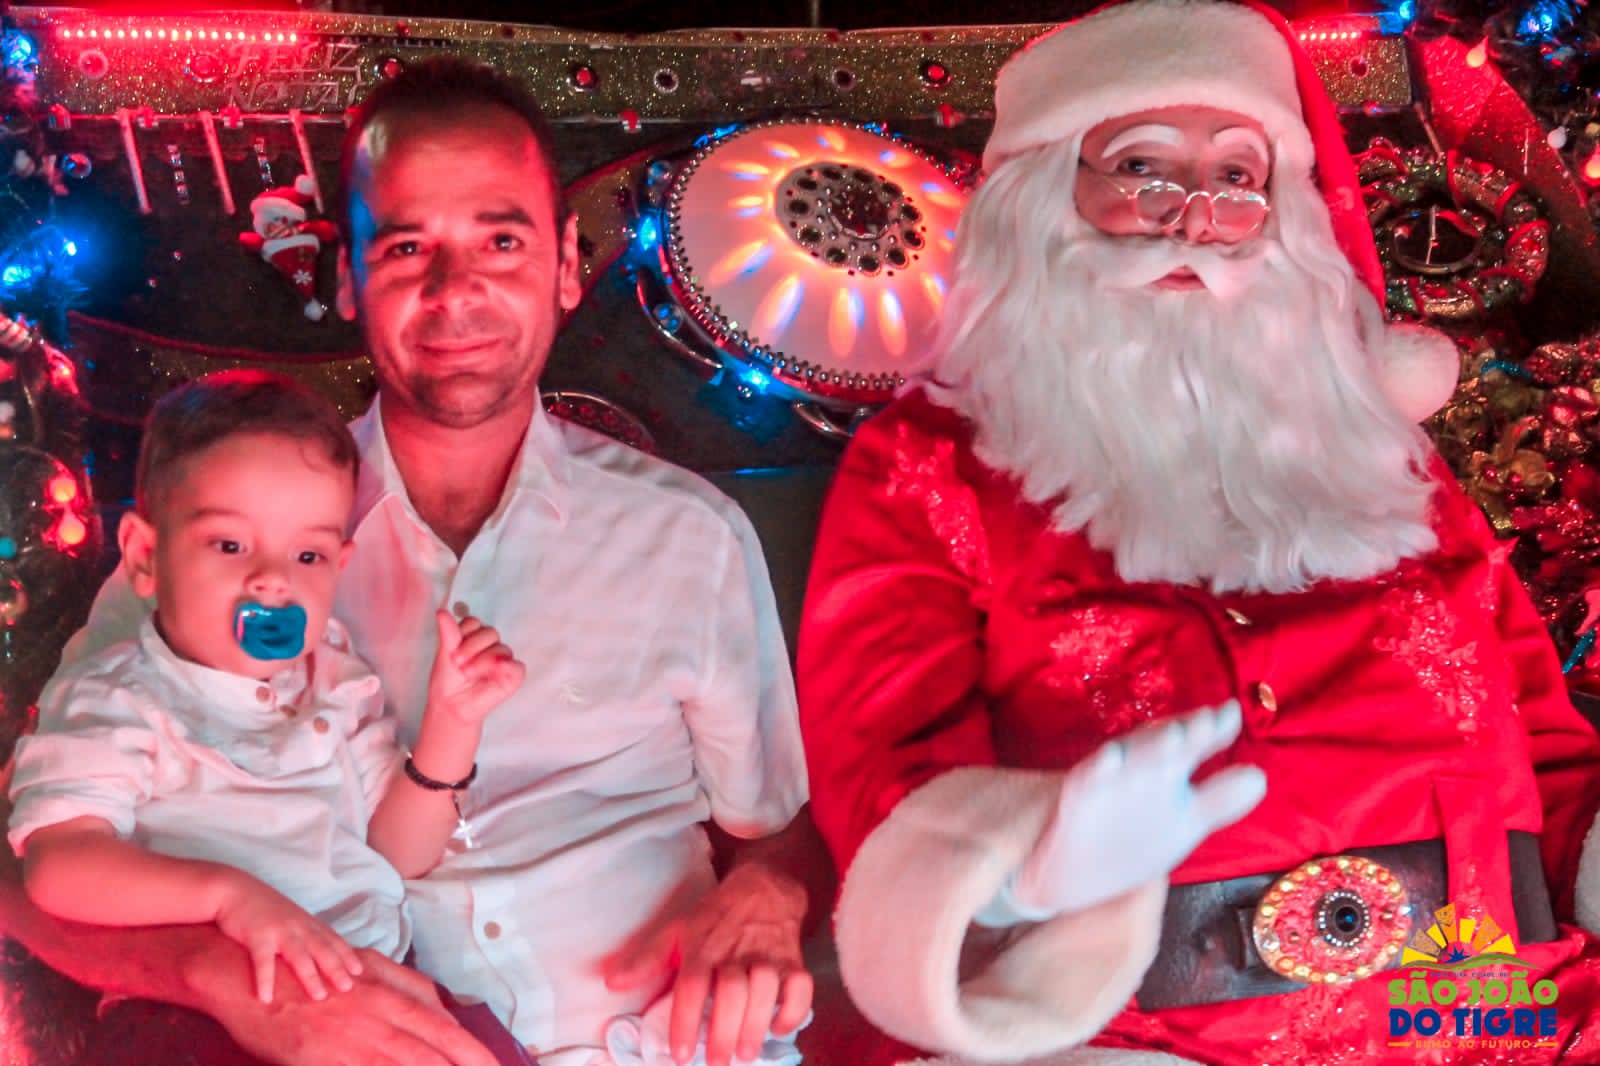 WhatsApp-Image-2021-12-22-at-10.47.49-1 Visita do Papai Noel encheu o município de São João do Tigre de magia e alegria